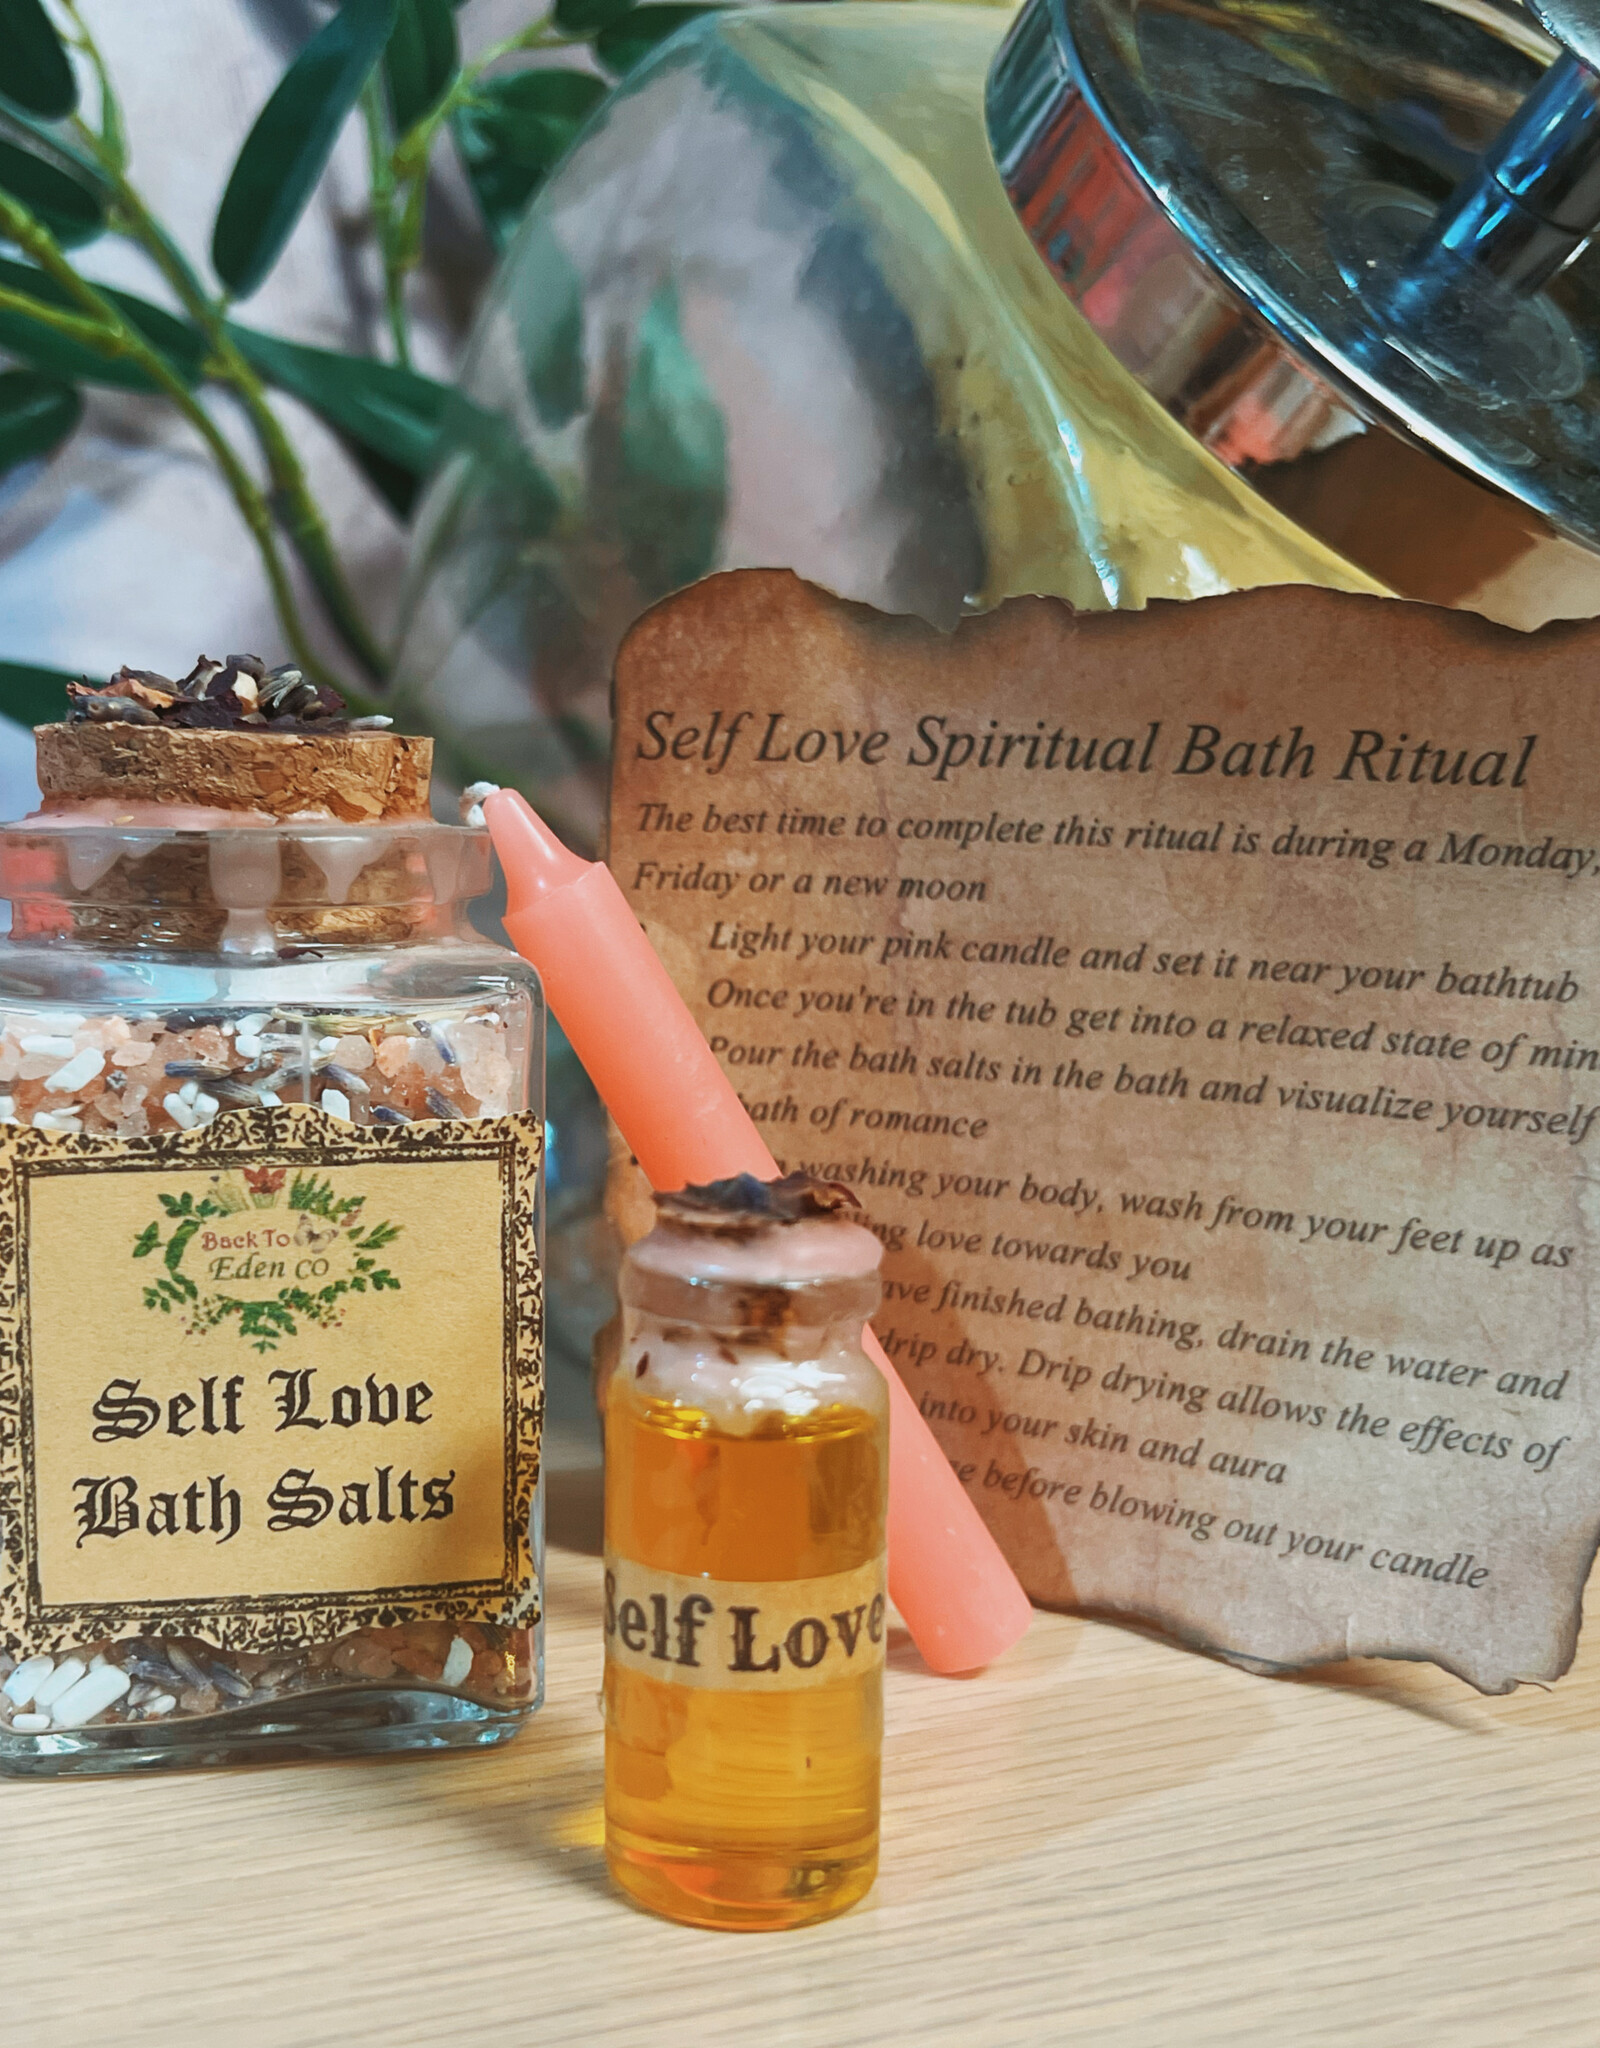 Back To Eden CO Ritual Bath Salt Kits